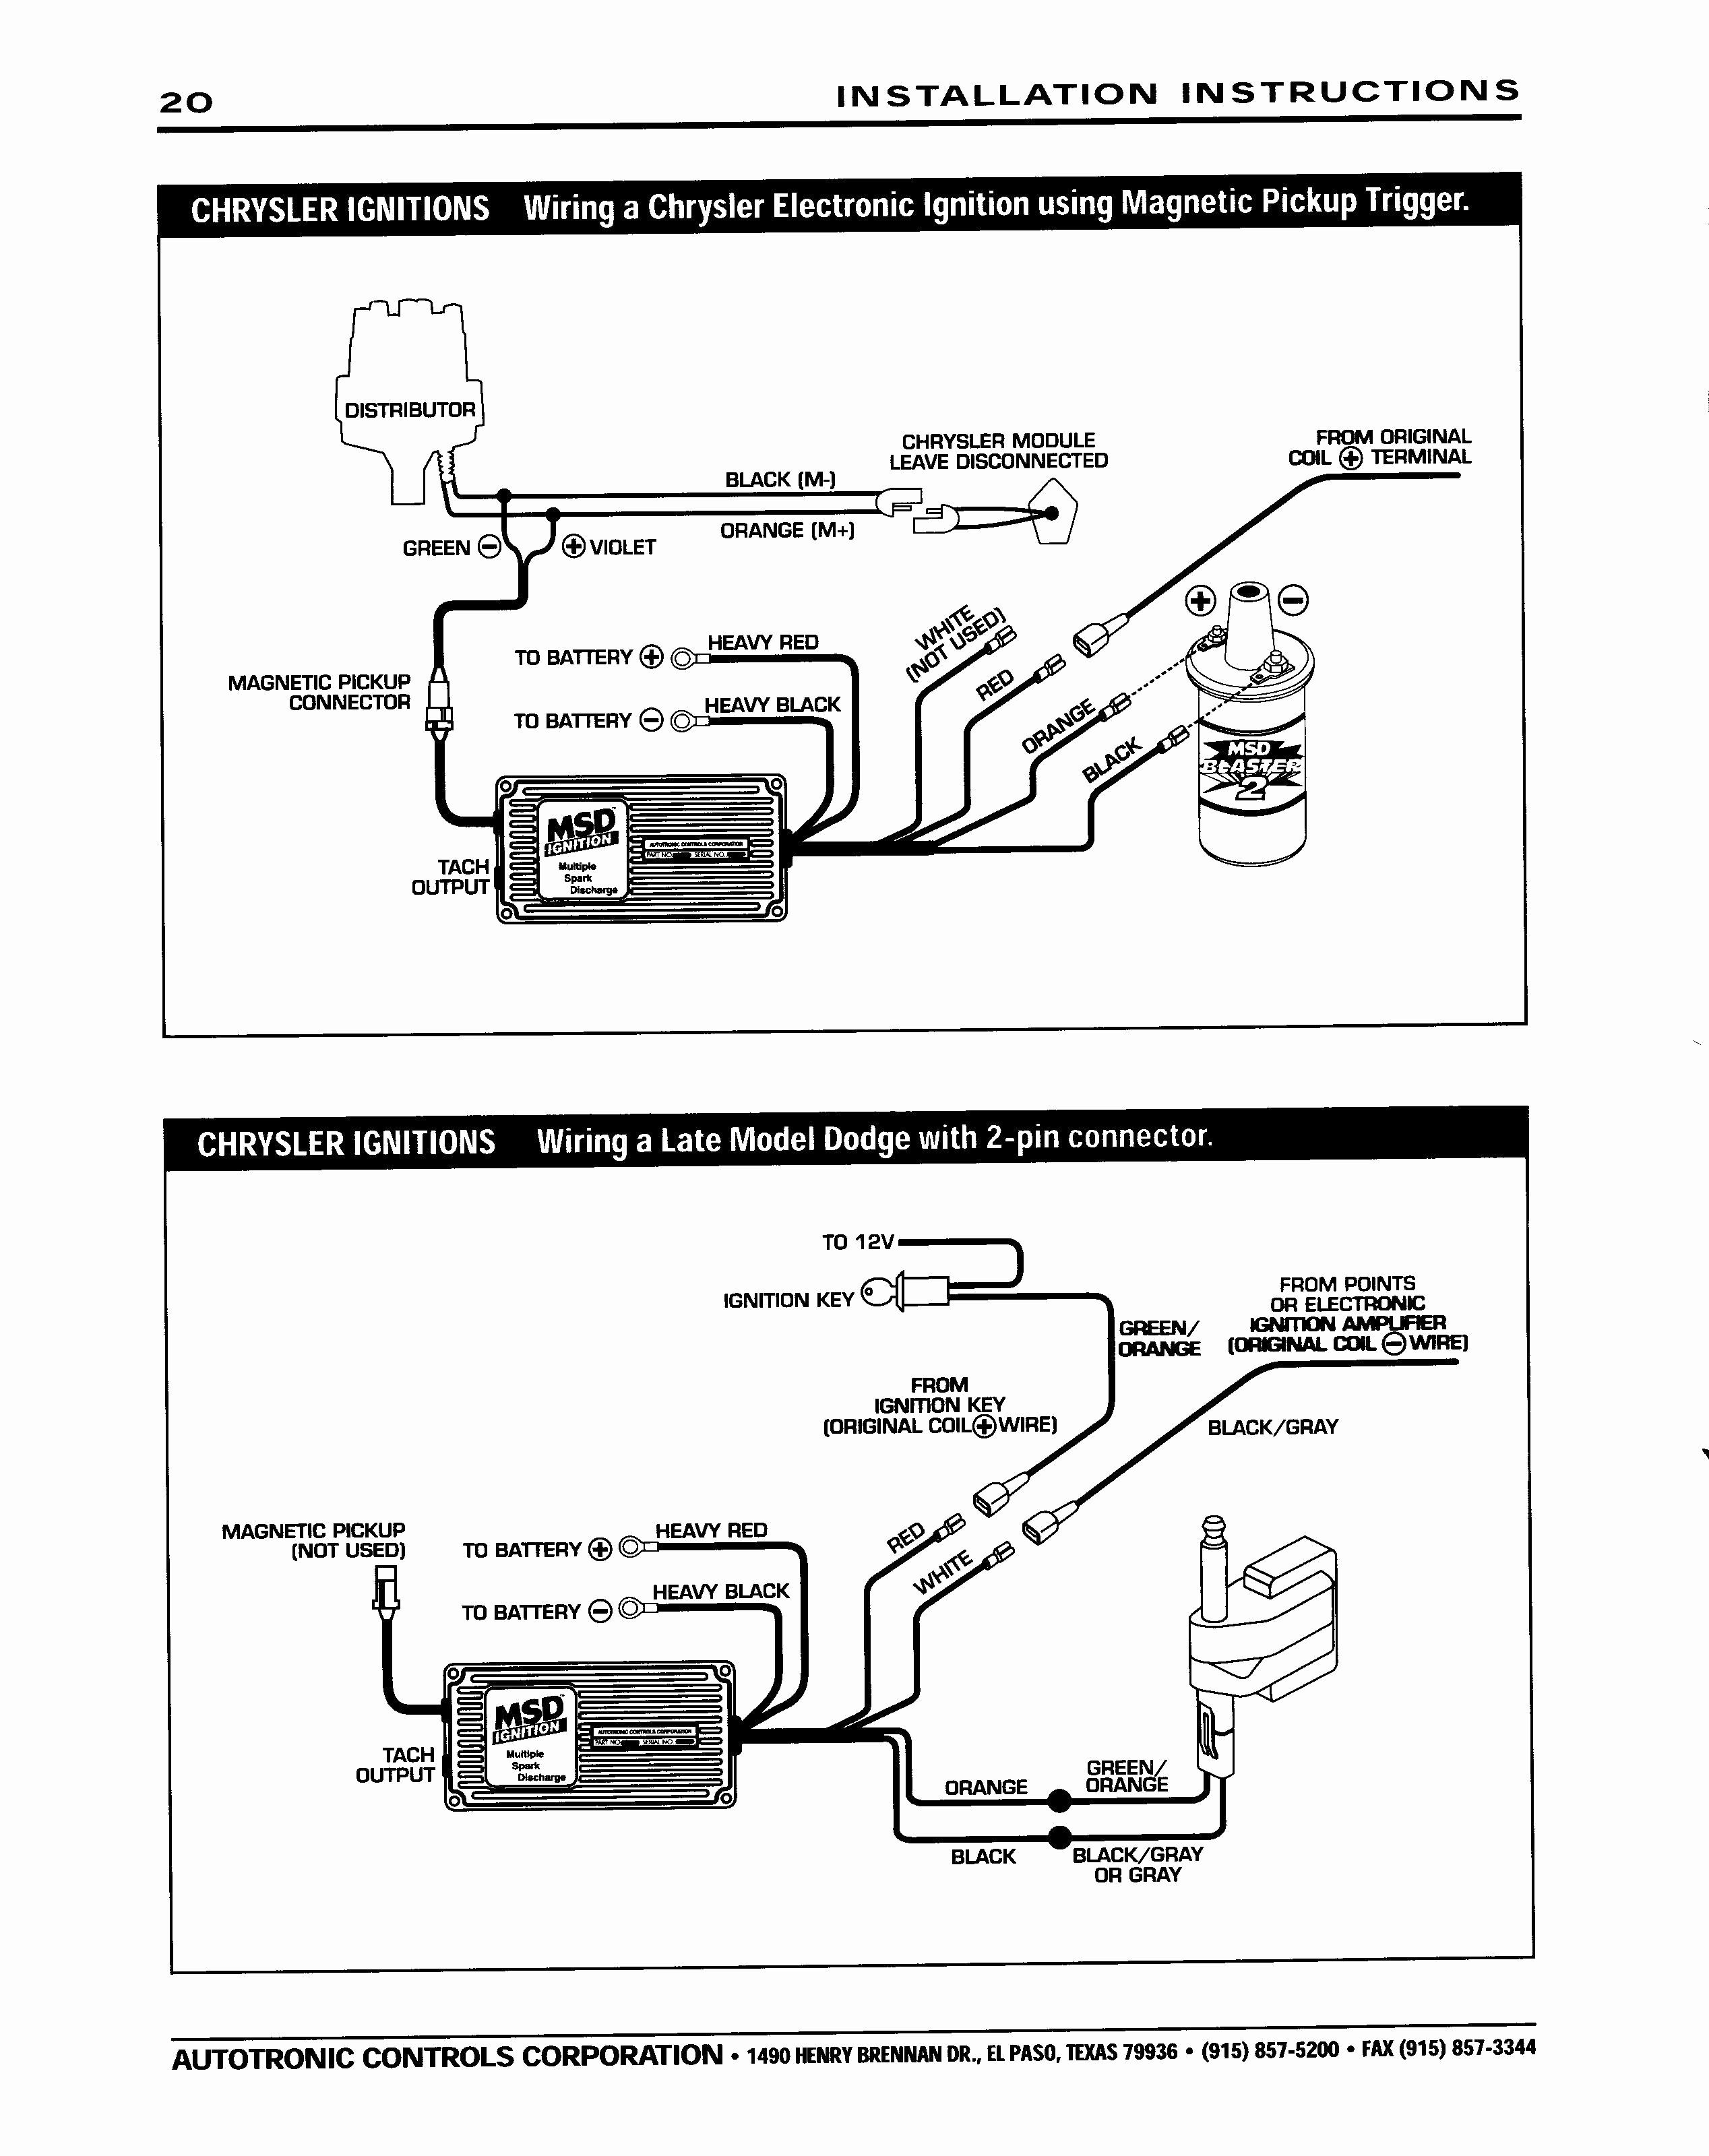 Chrysler Electronic Ignition Wiring Diagram Free Picture | Wiring - Mopar Electronic Ignition Wiring Diagram